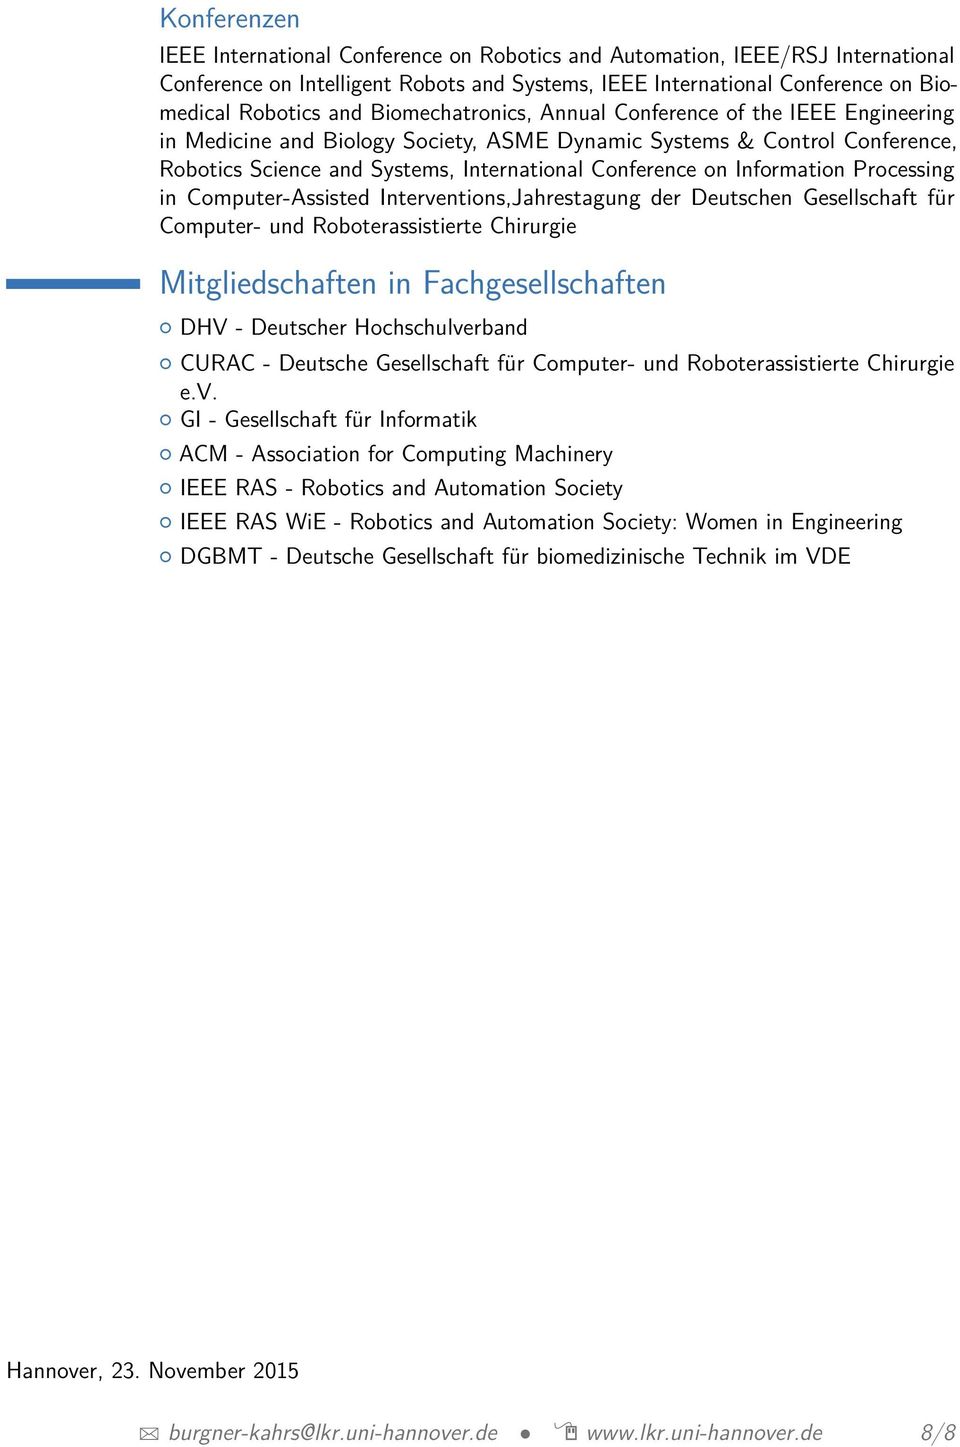 Information Processing in Computer-Assisted Interventions,Jahrestagung der Deutschen Gesellschaft für Computer- und Roboterassistierte Chirurgie Mitgliedschaften in Fachgesellschaften DHV - Deutscher